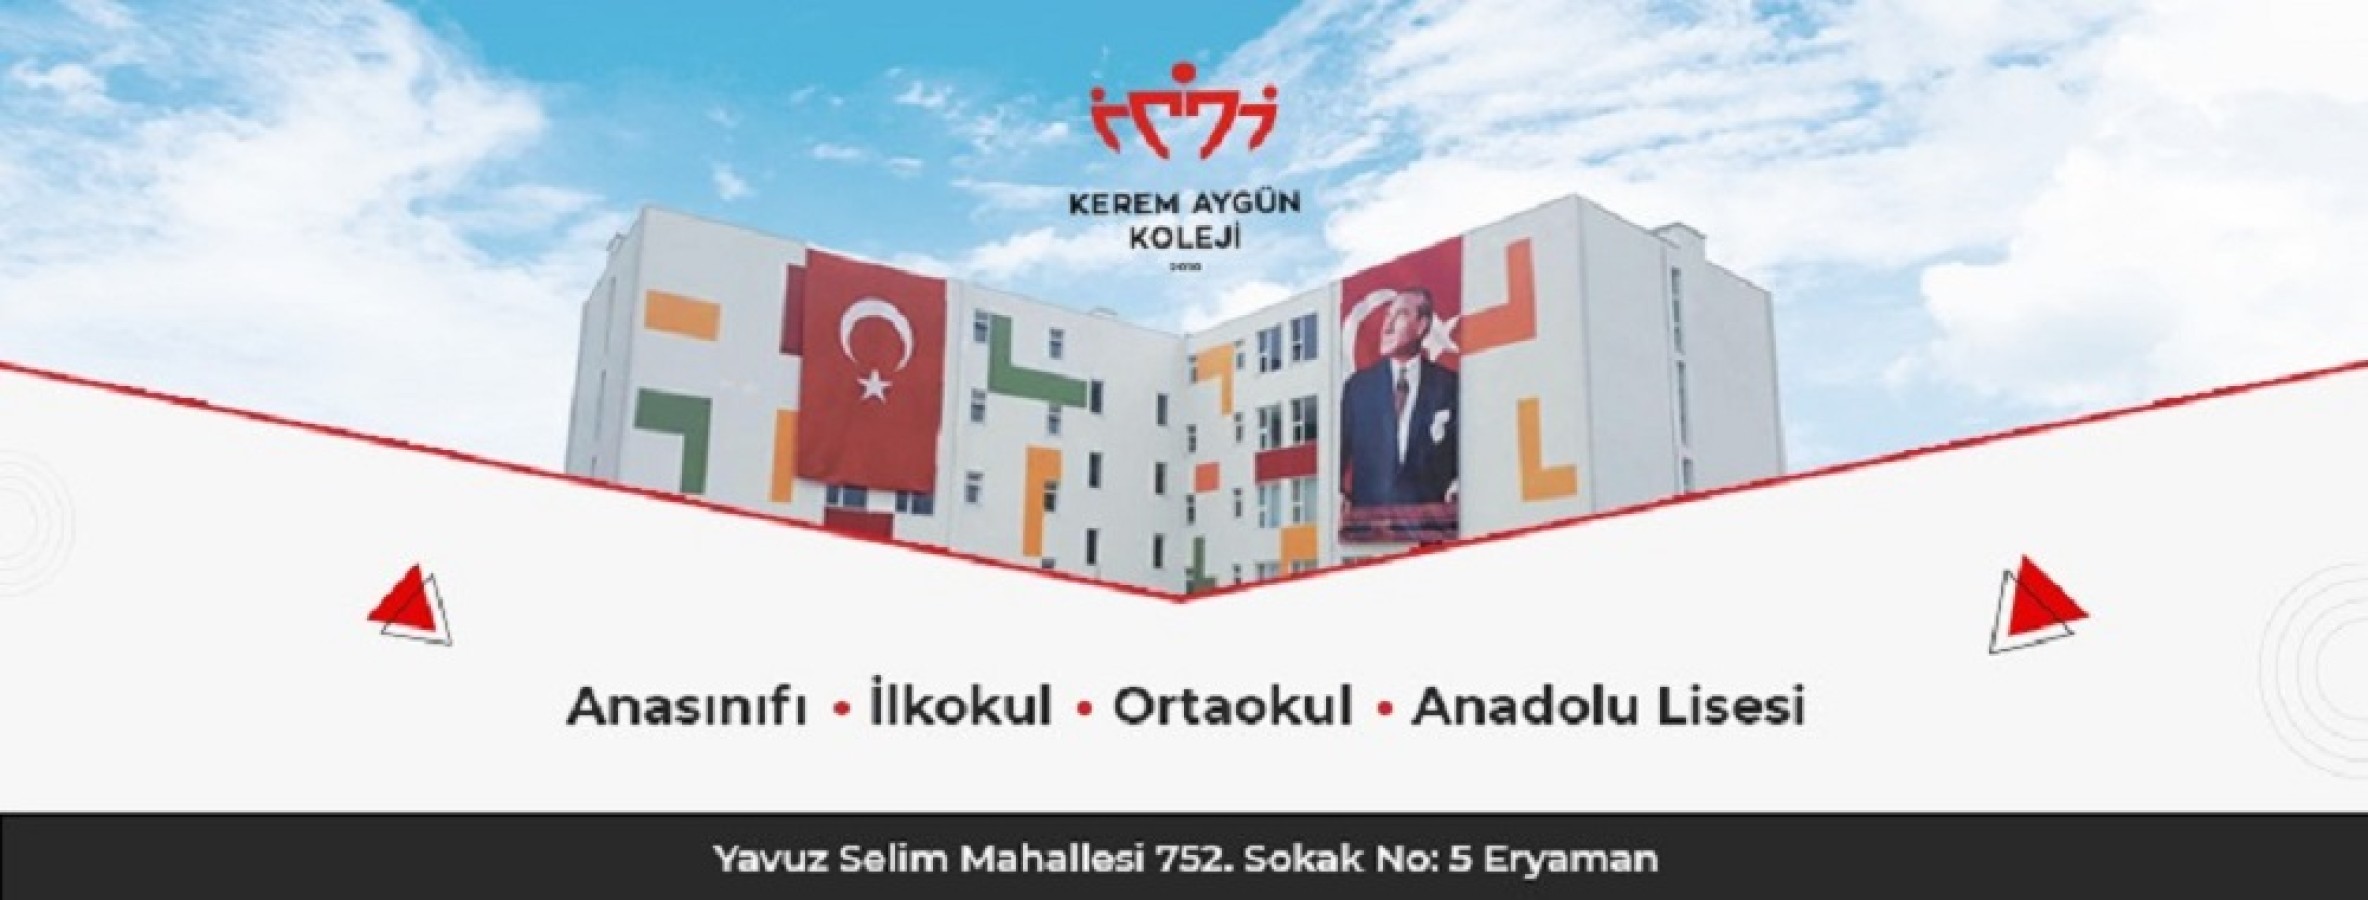 Ankara’da Eğitimde En Gelişmiş Kolejlerinden Kerem Aygün Koleji